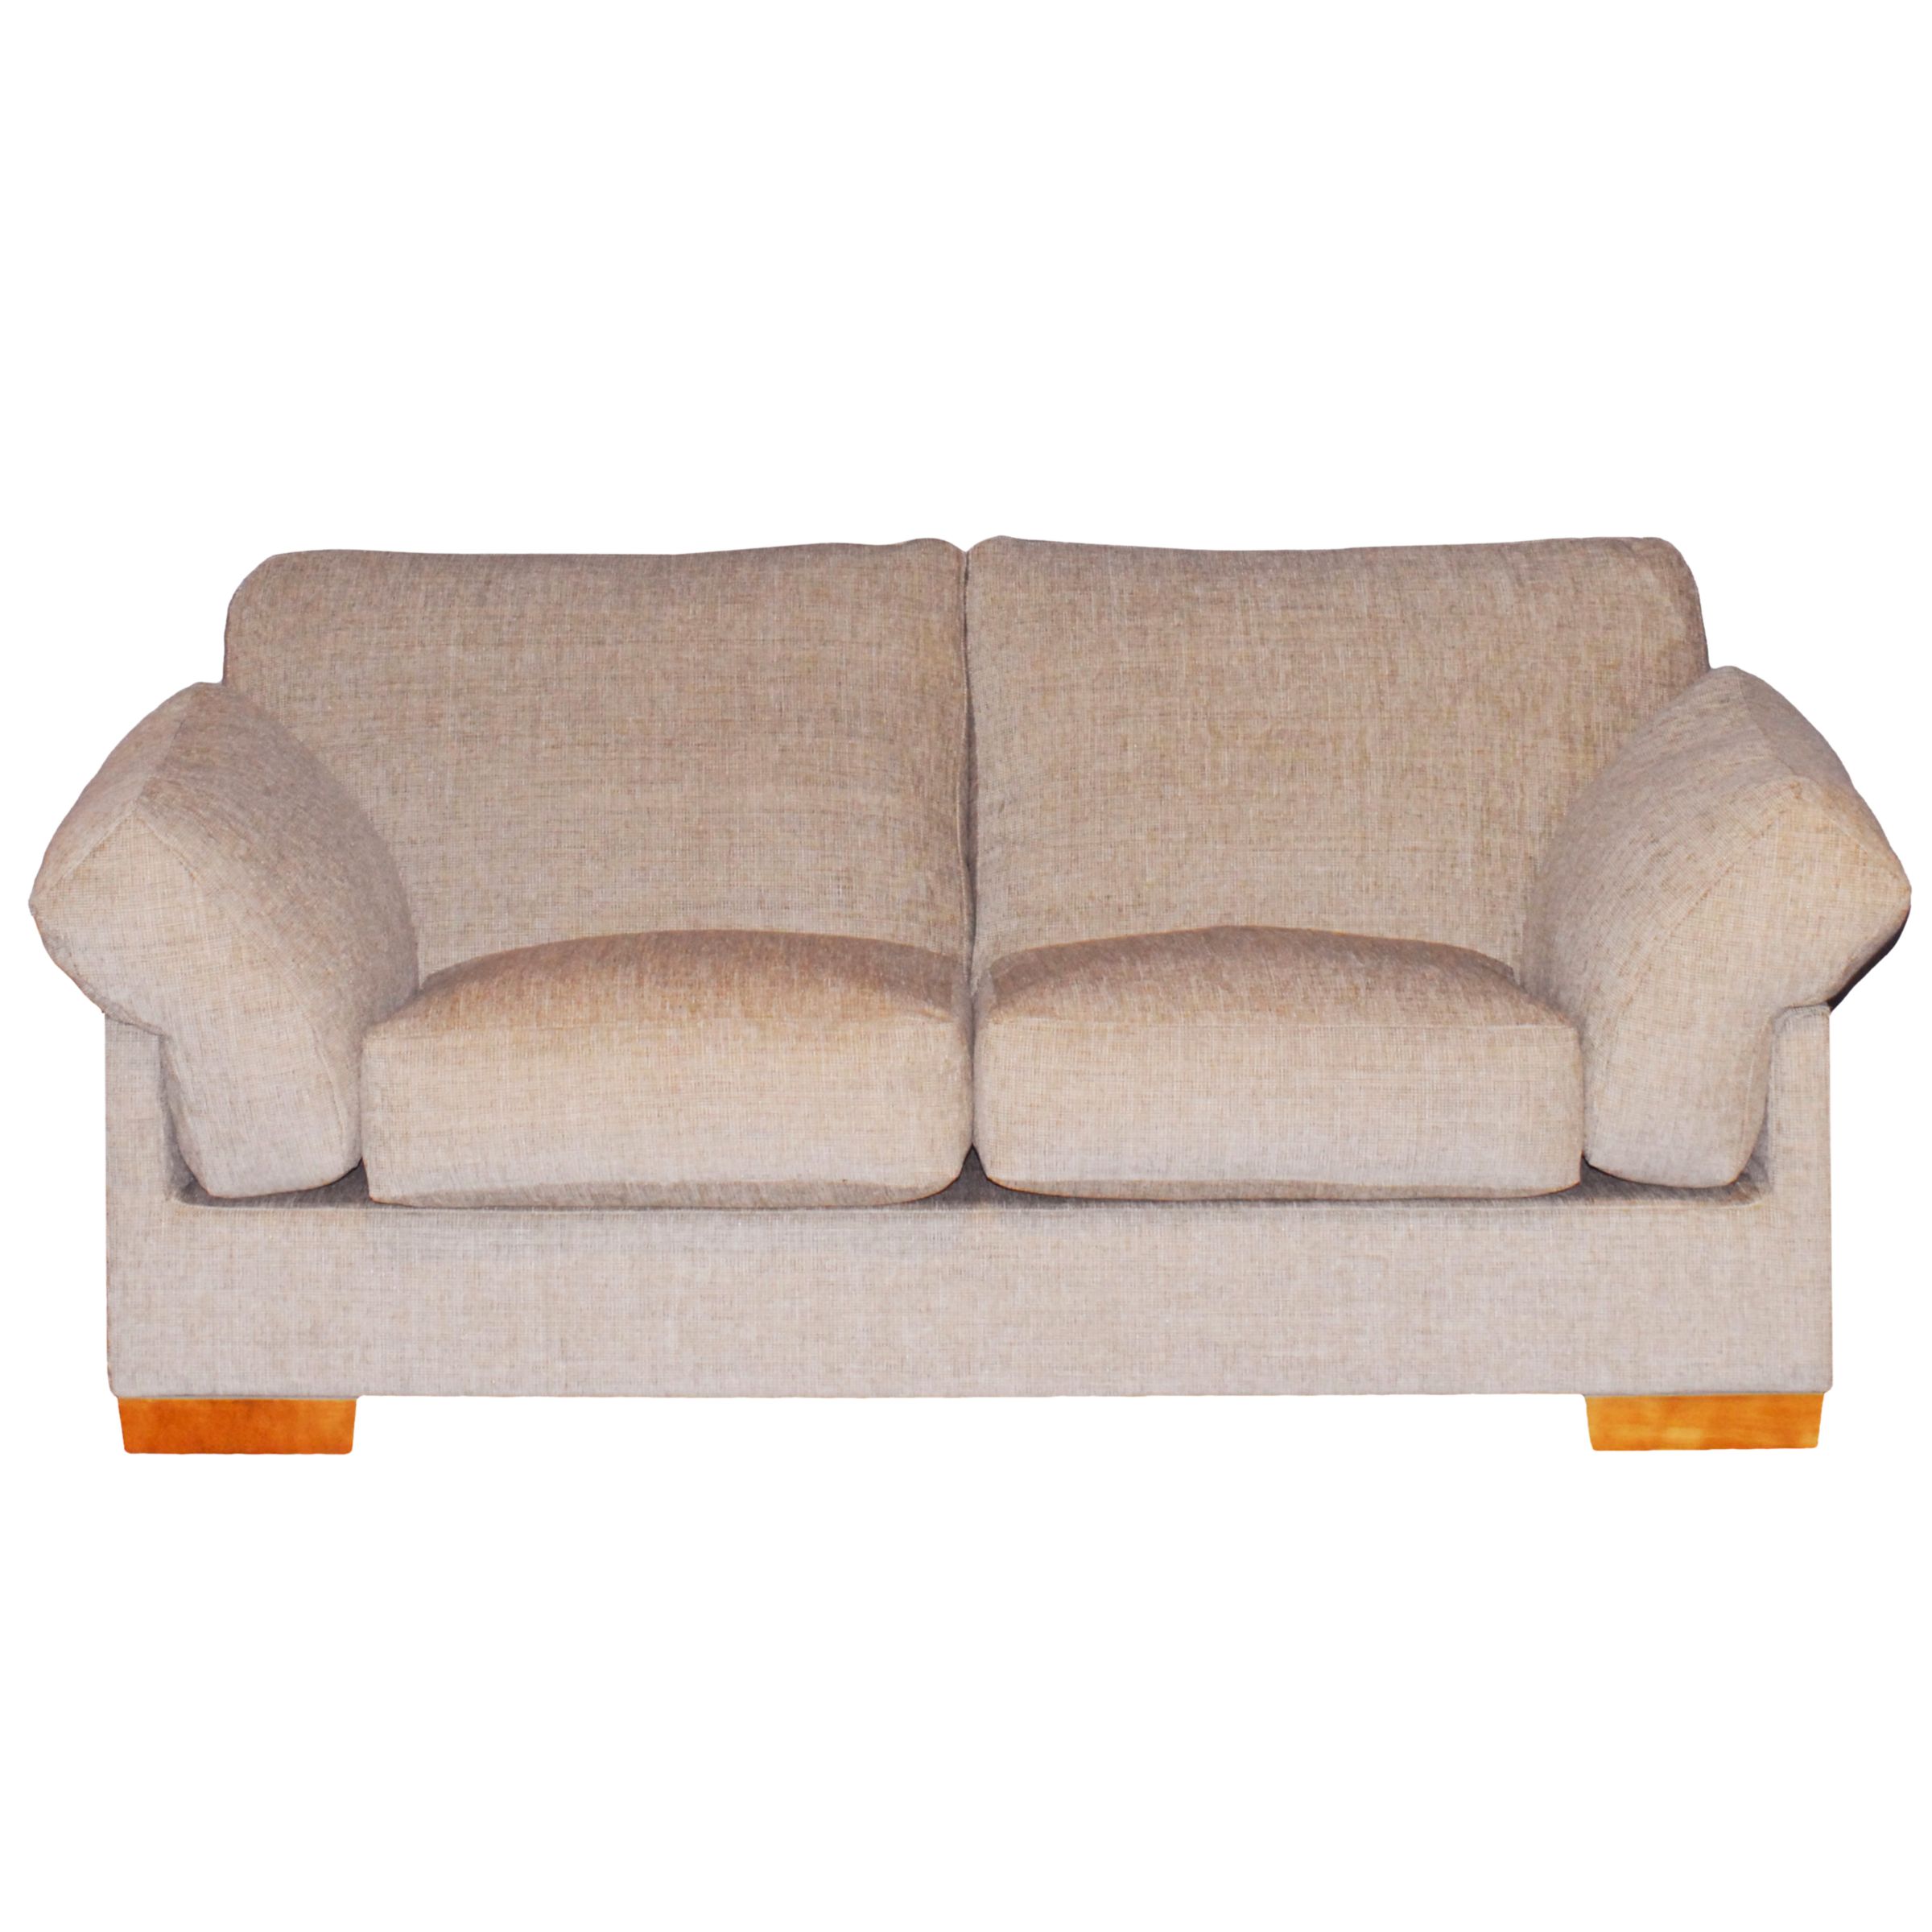 Calanda Medium Sofa, Hessian